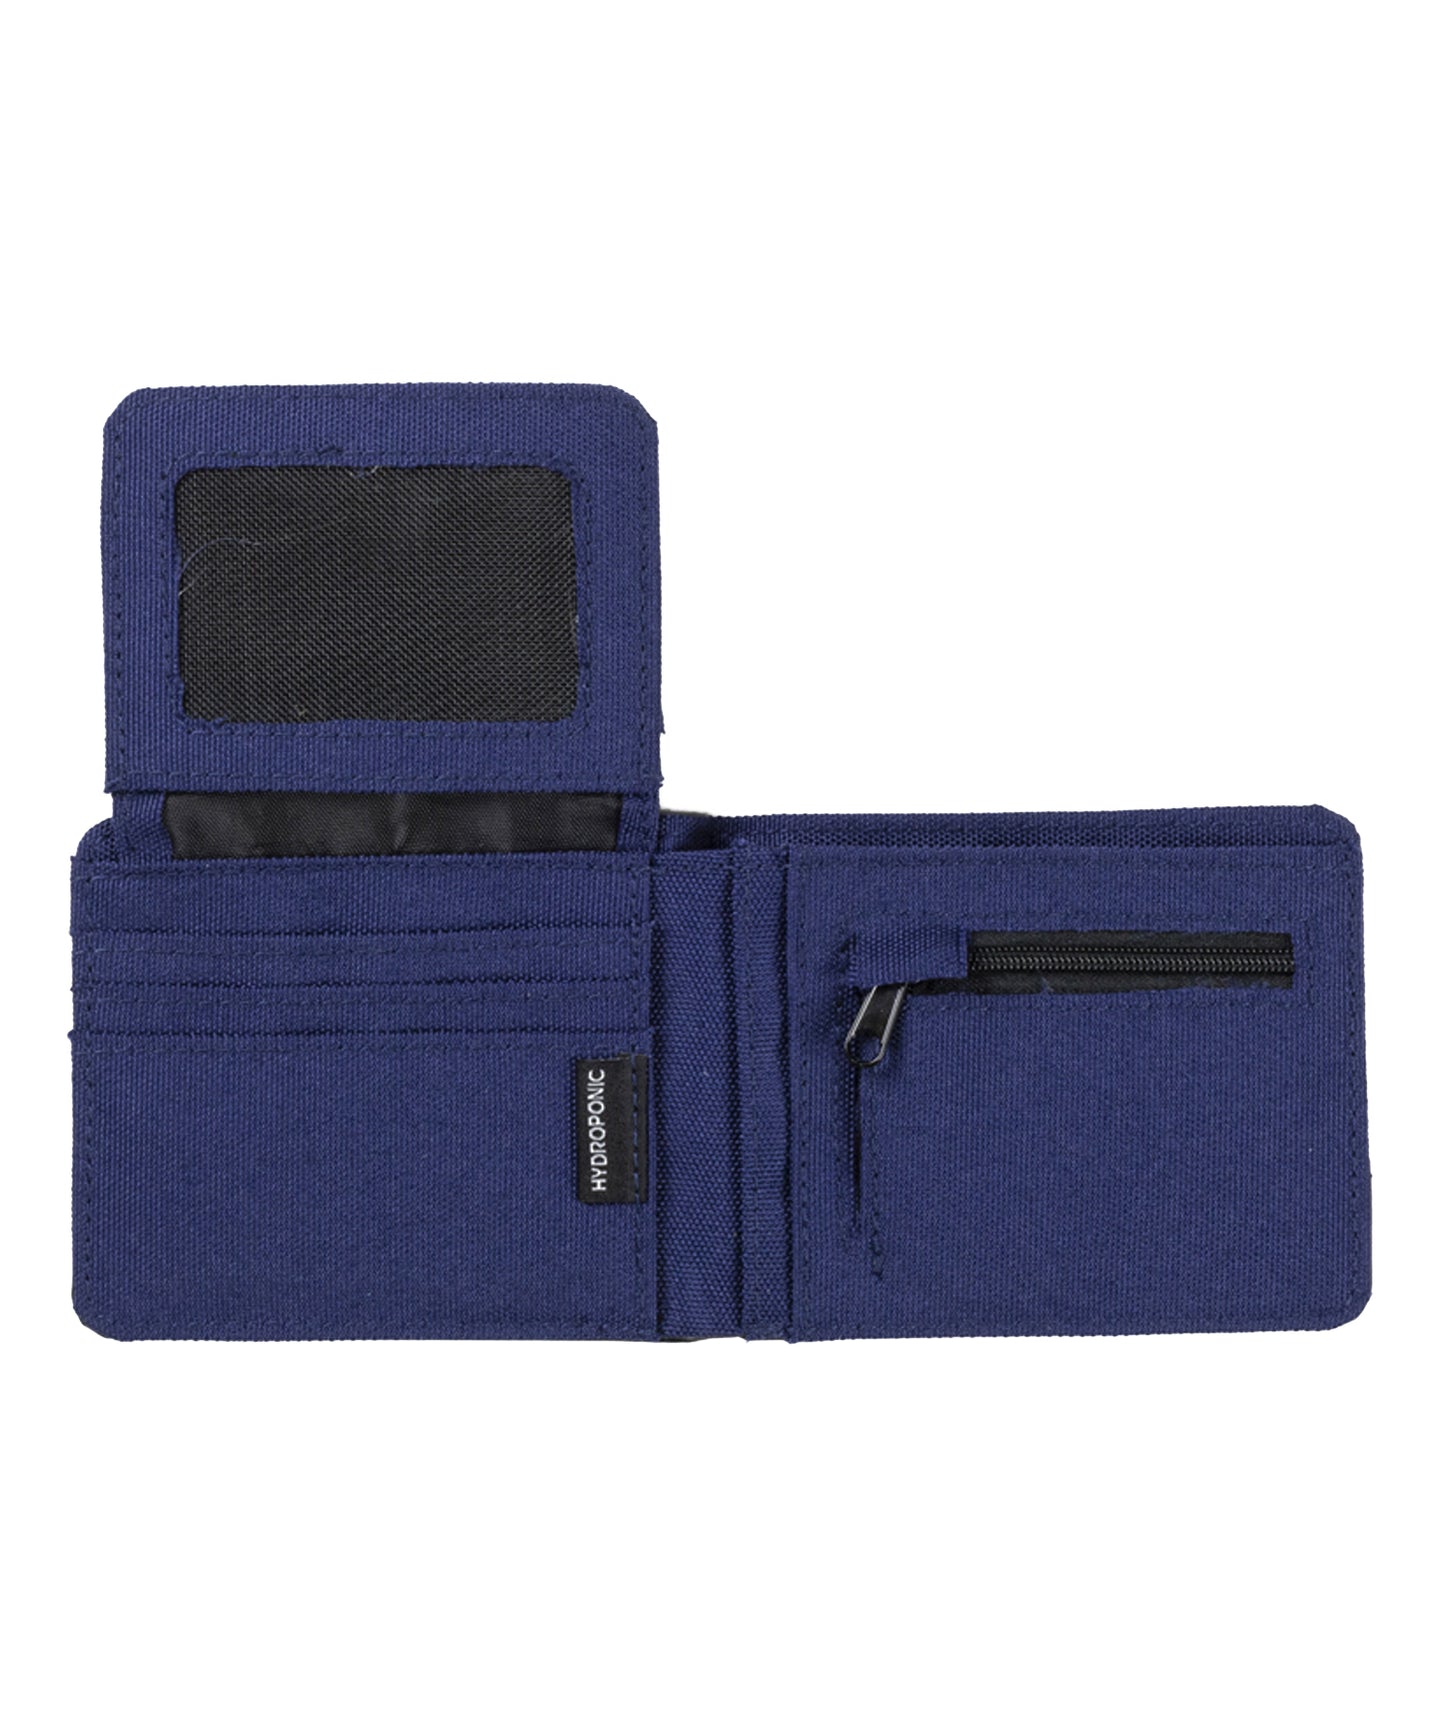 hydroponic cartera clasica de dos pliegues de ropa y piel sintética, color azul y negro y logo metálico hydroponic en el frente